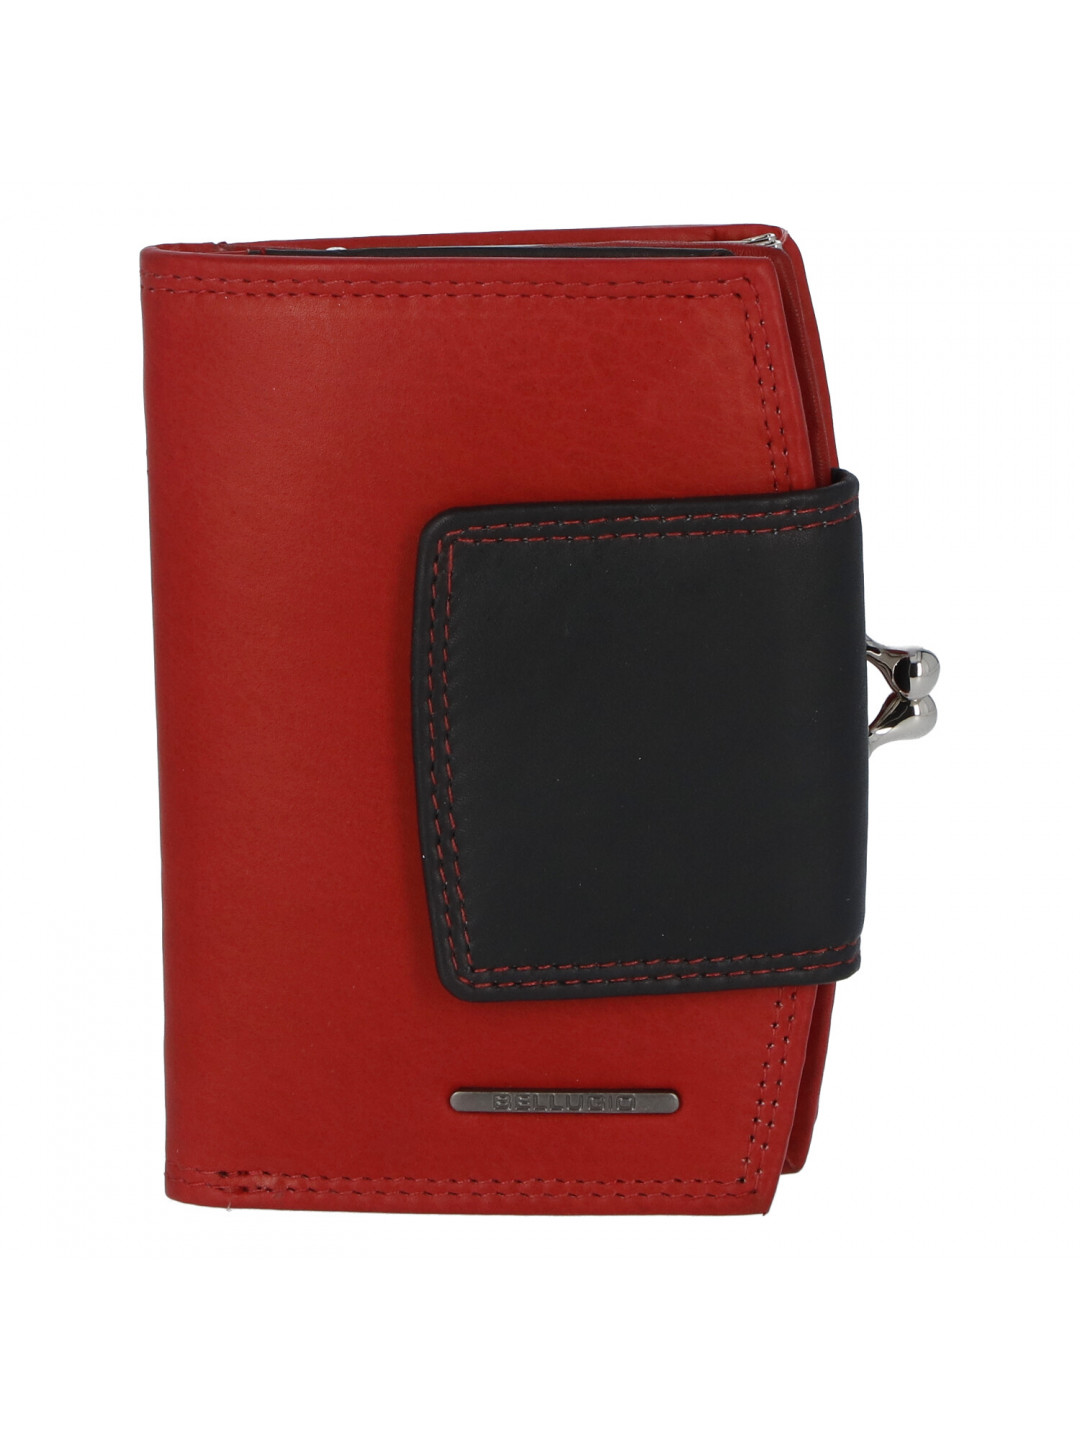 Luxusní dámská kožená peněženka červená – Bellugio Armi New